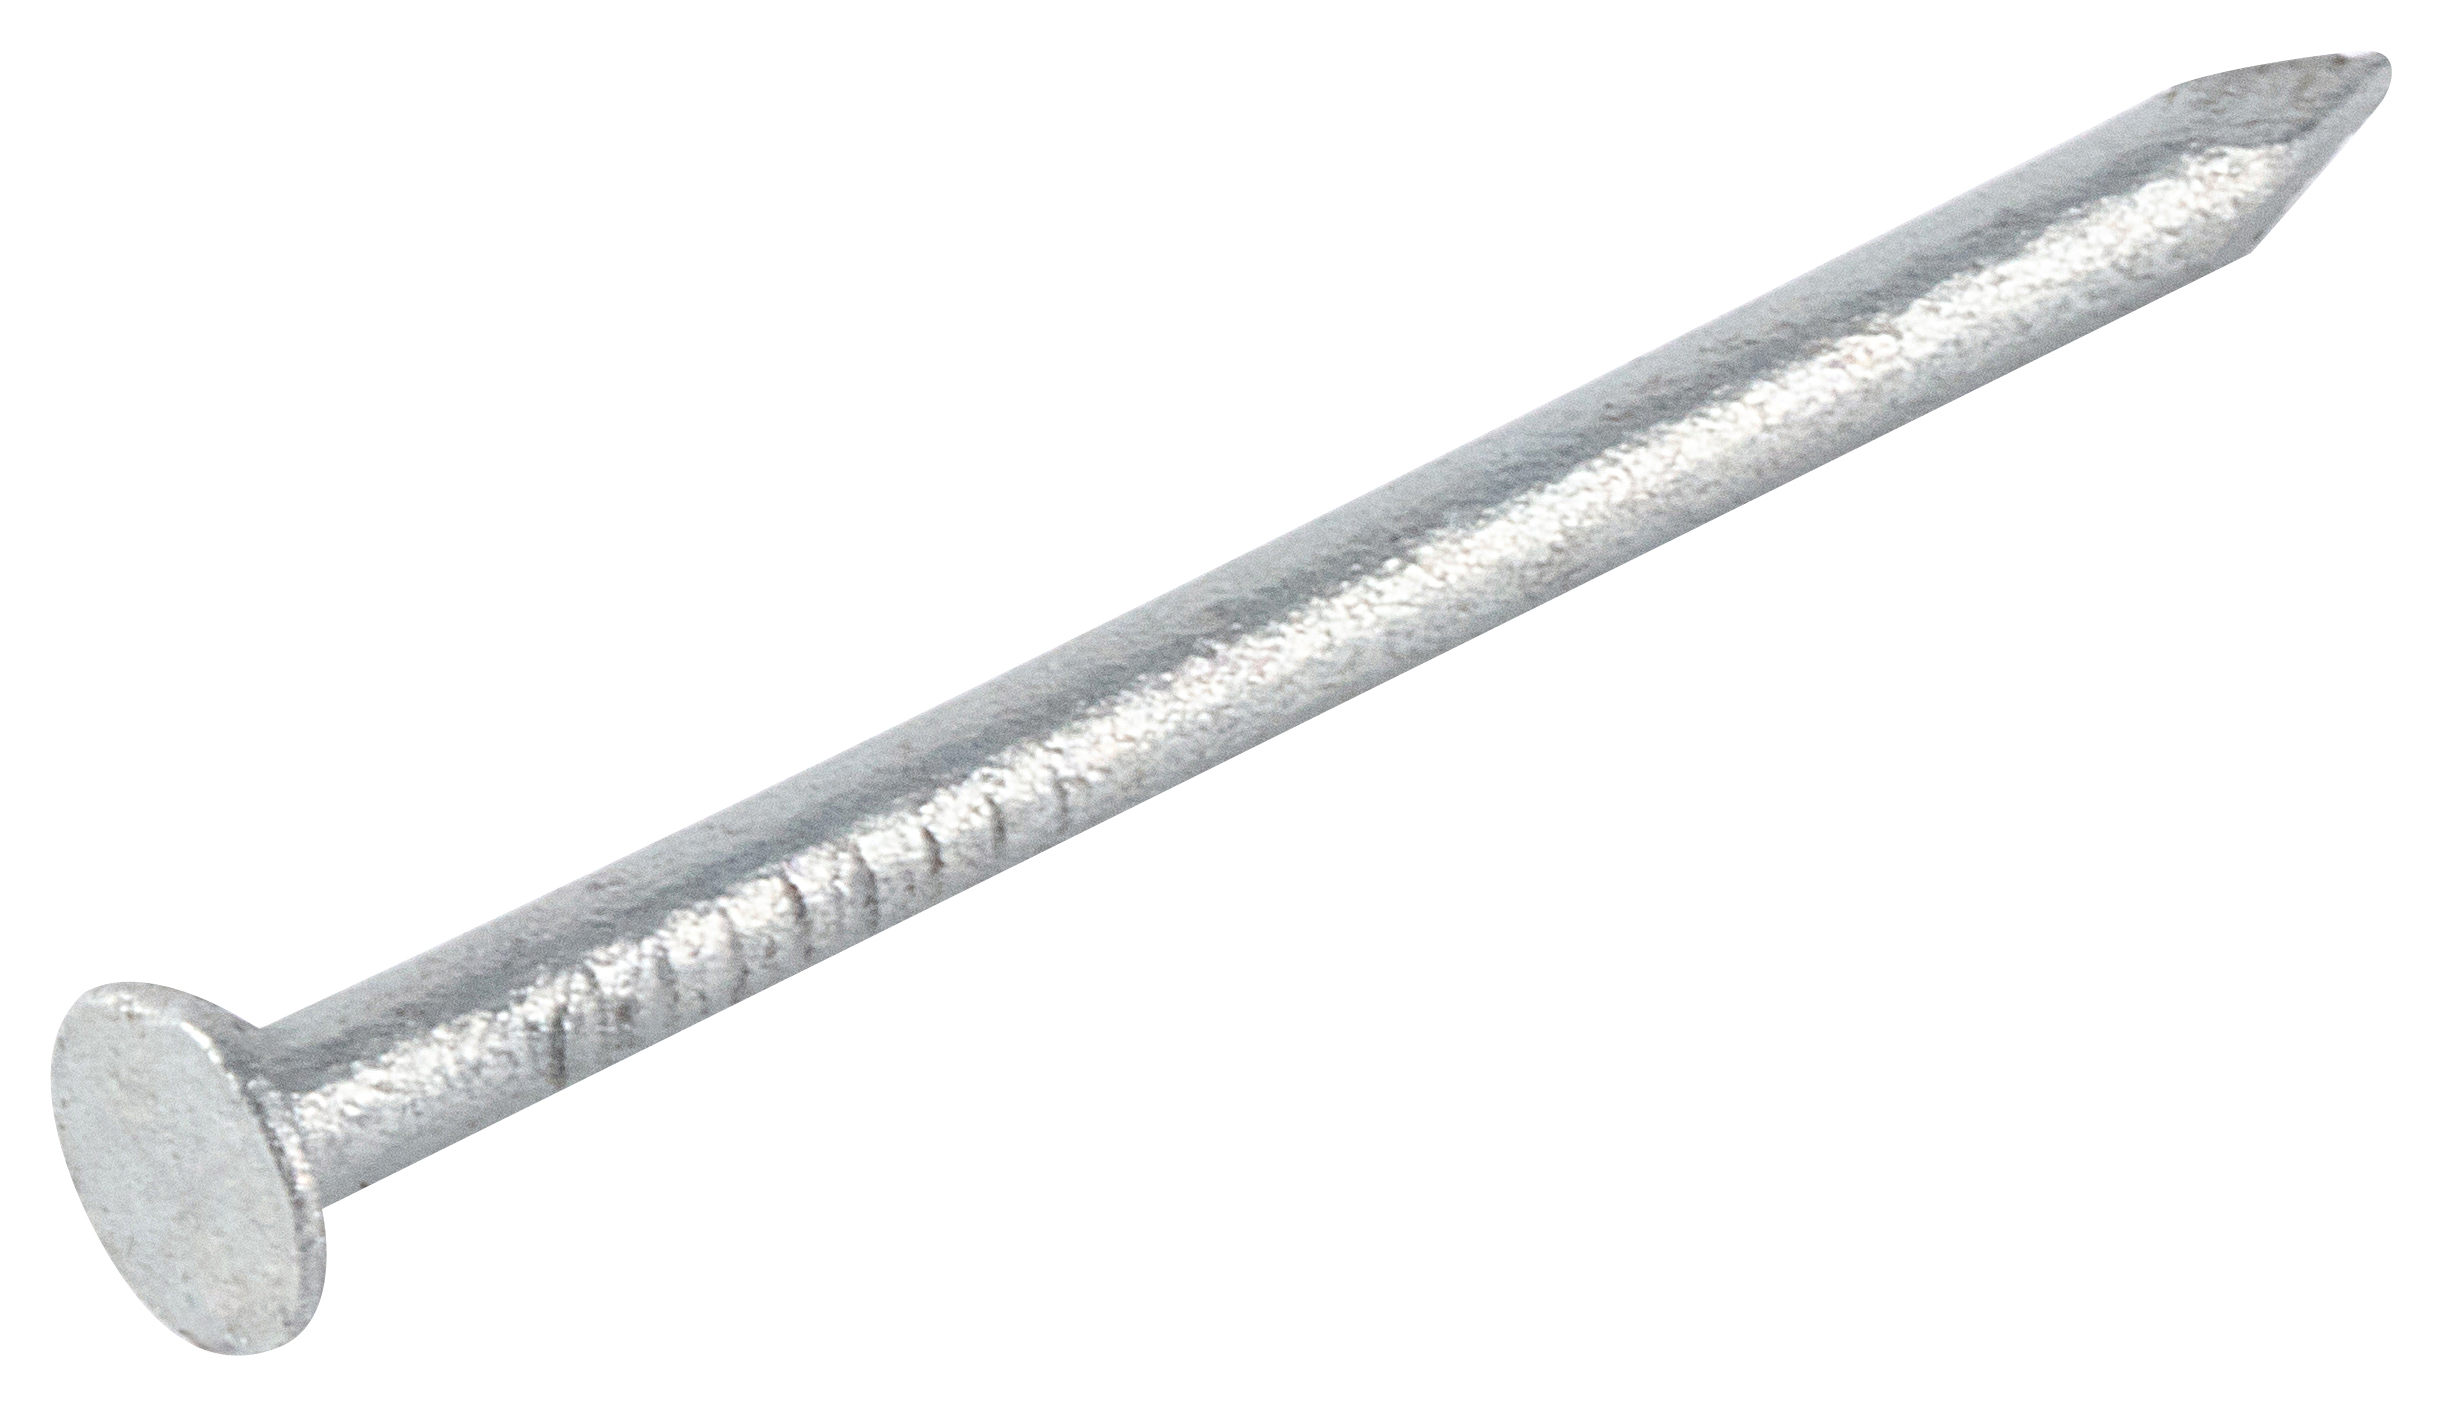 Galvanised Round Wire Nails - 30 x 2mm - 500g